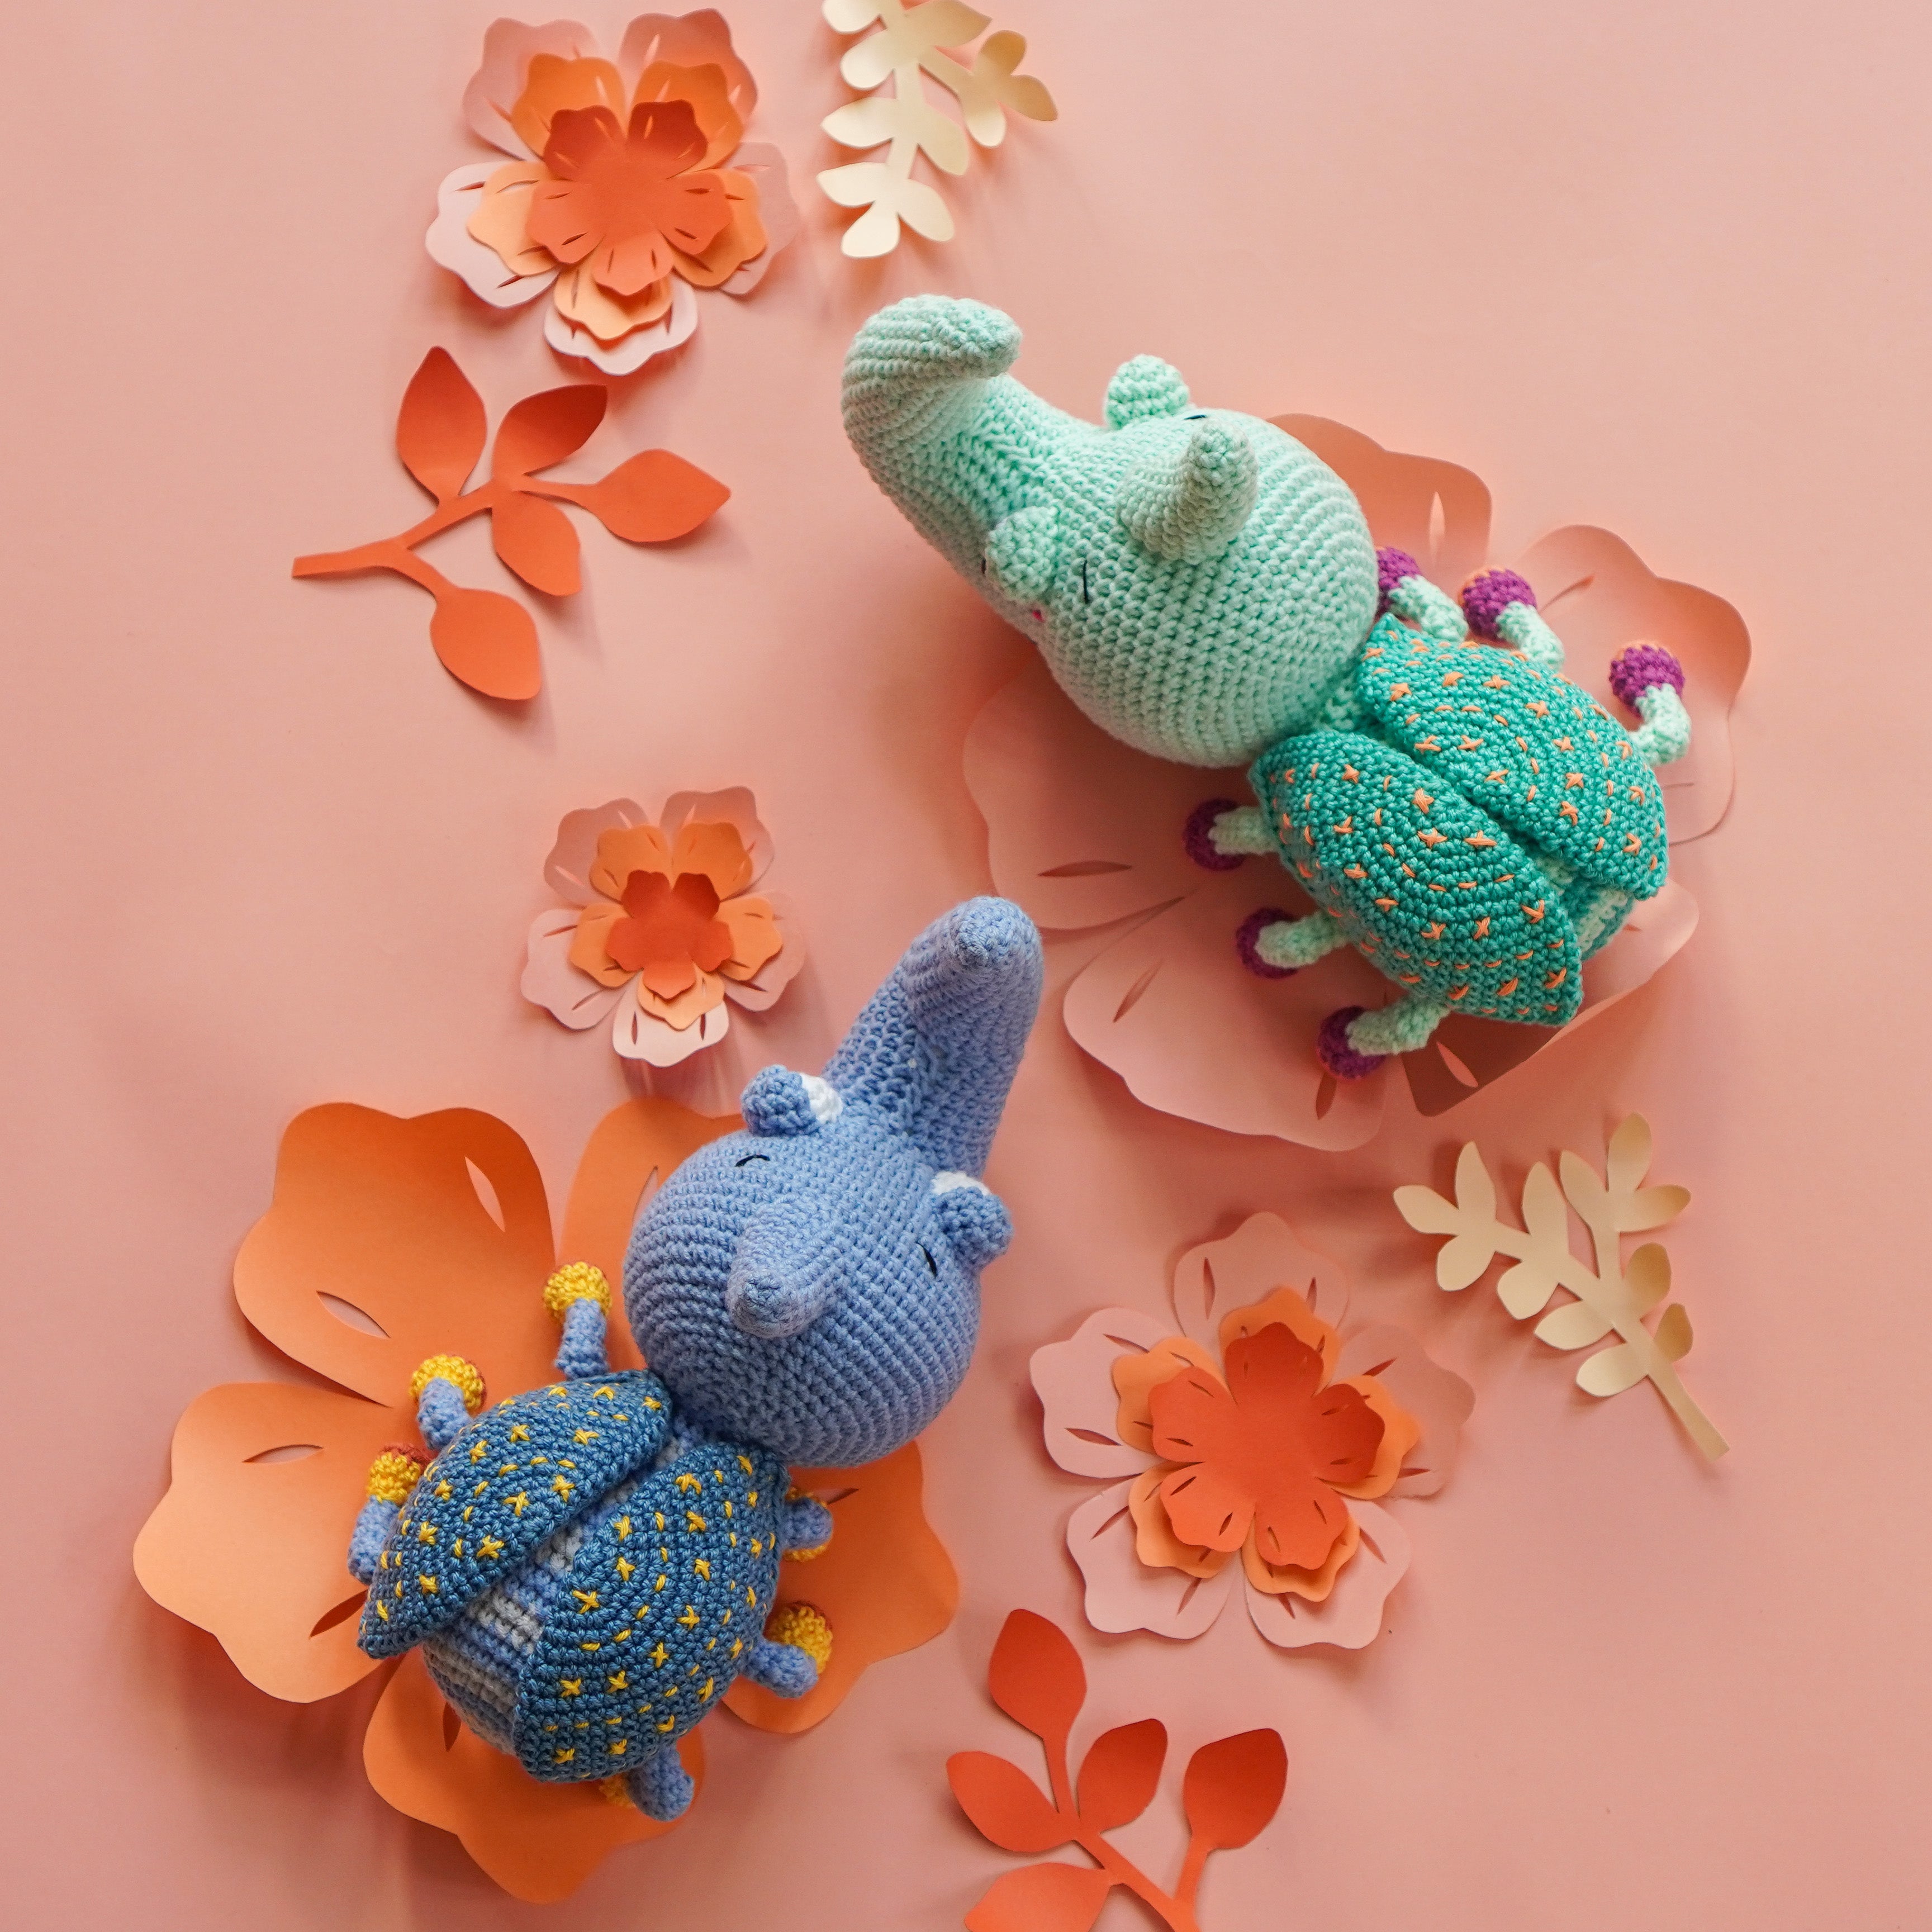 Hercules Beetle Crochet Pattern by Aquariwool Crochet (Crochet Doll Pattern/Amigurumi Pattern for Baby gift)